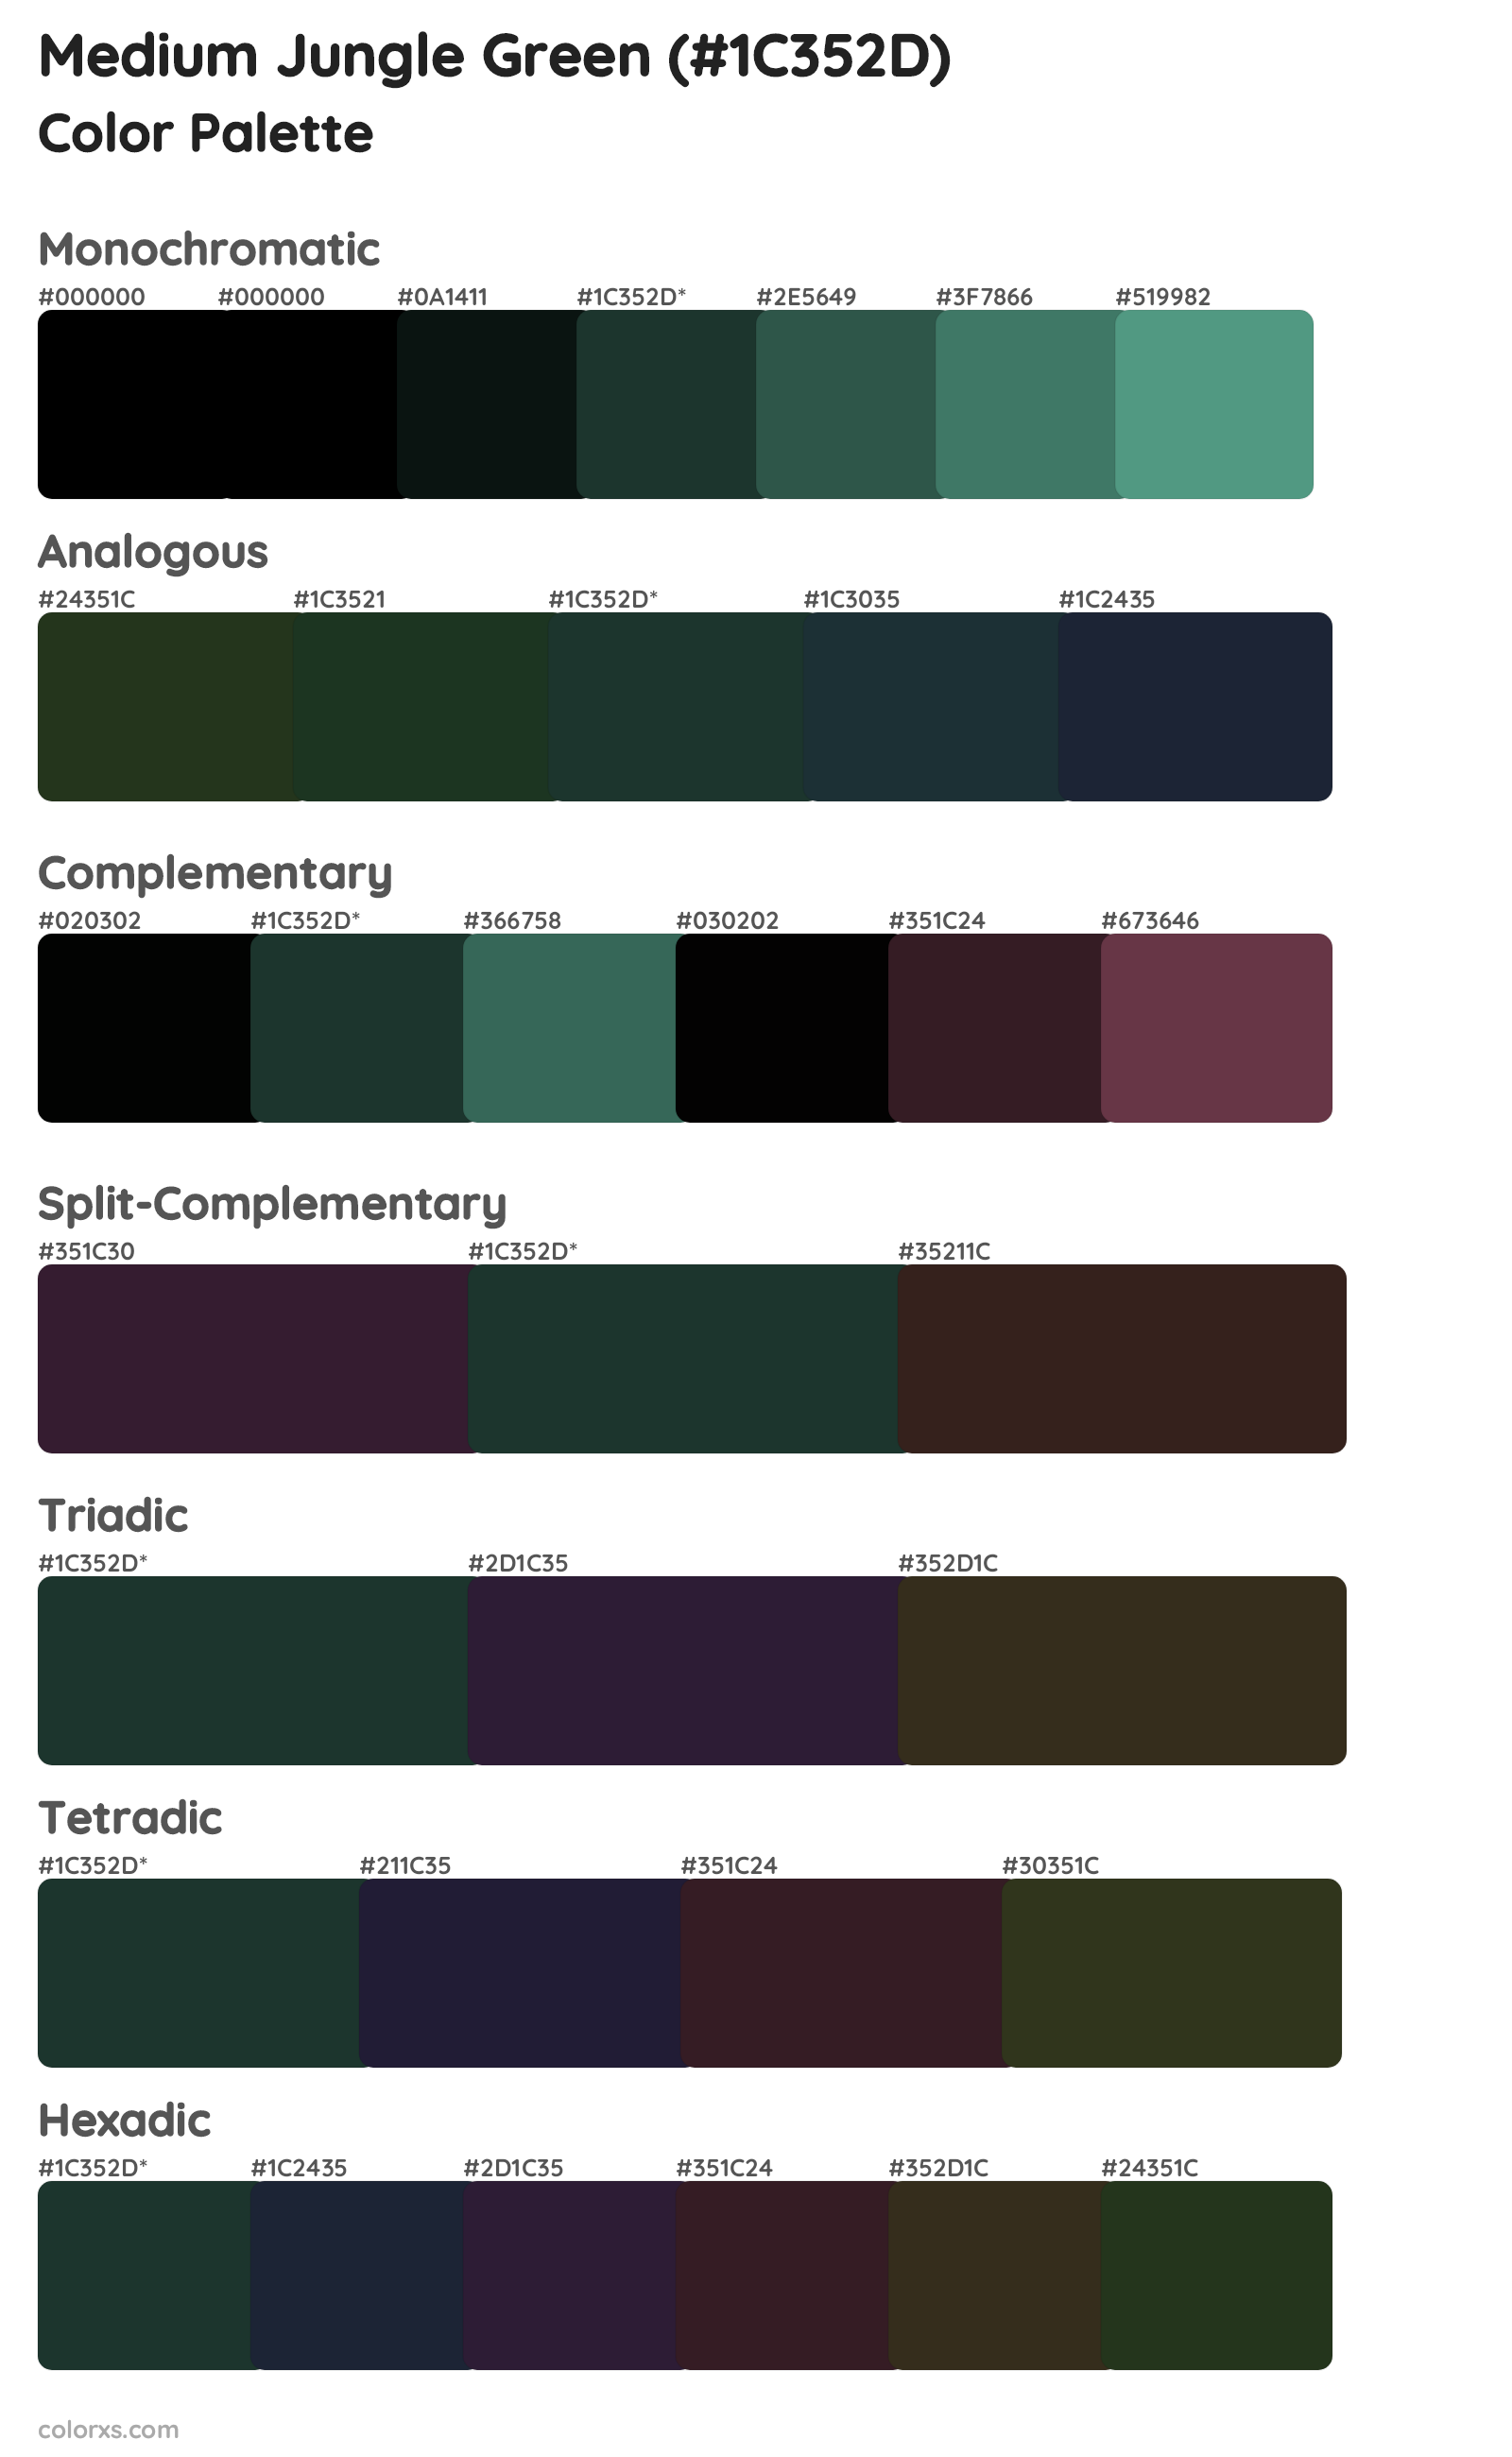 Medium Jungle Green Color Scheme Palettes